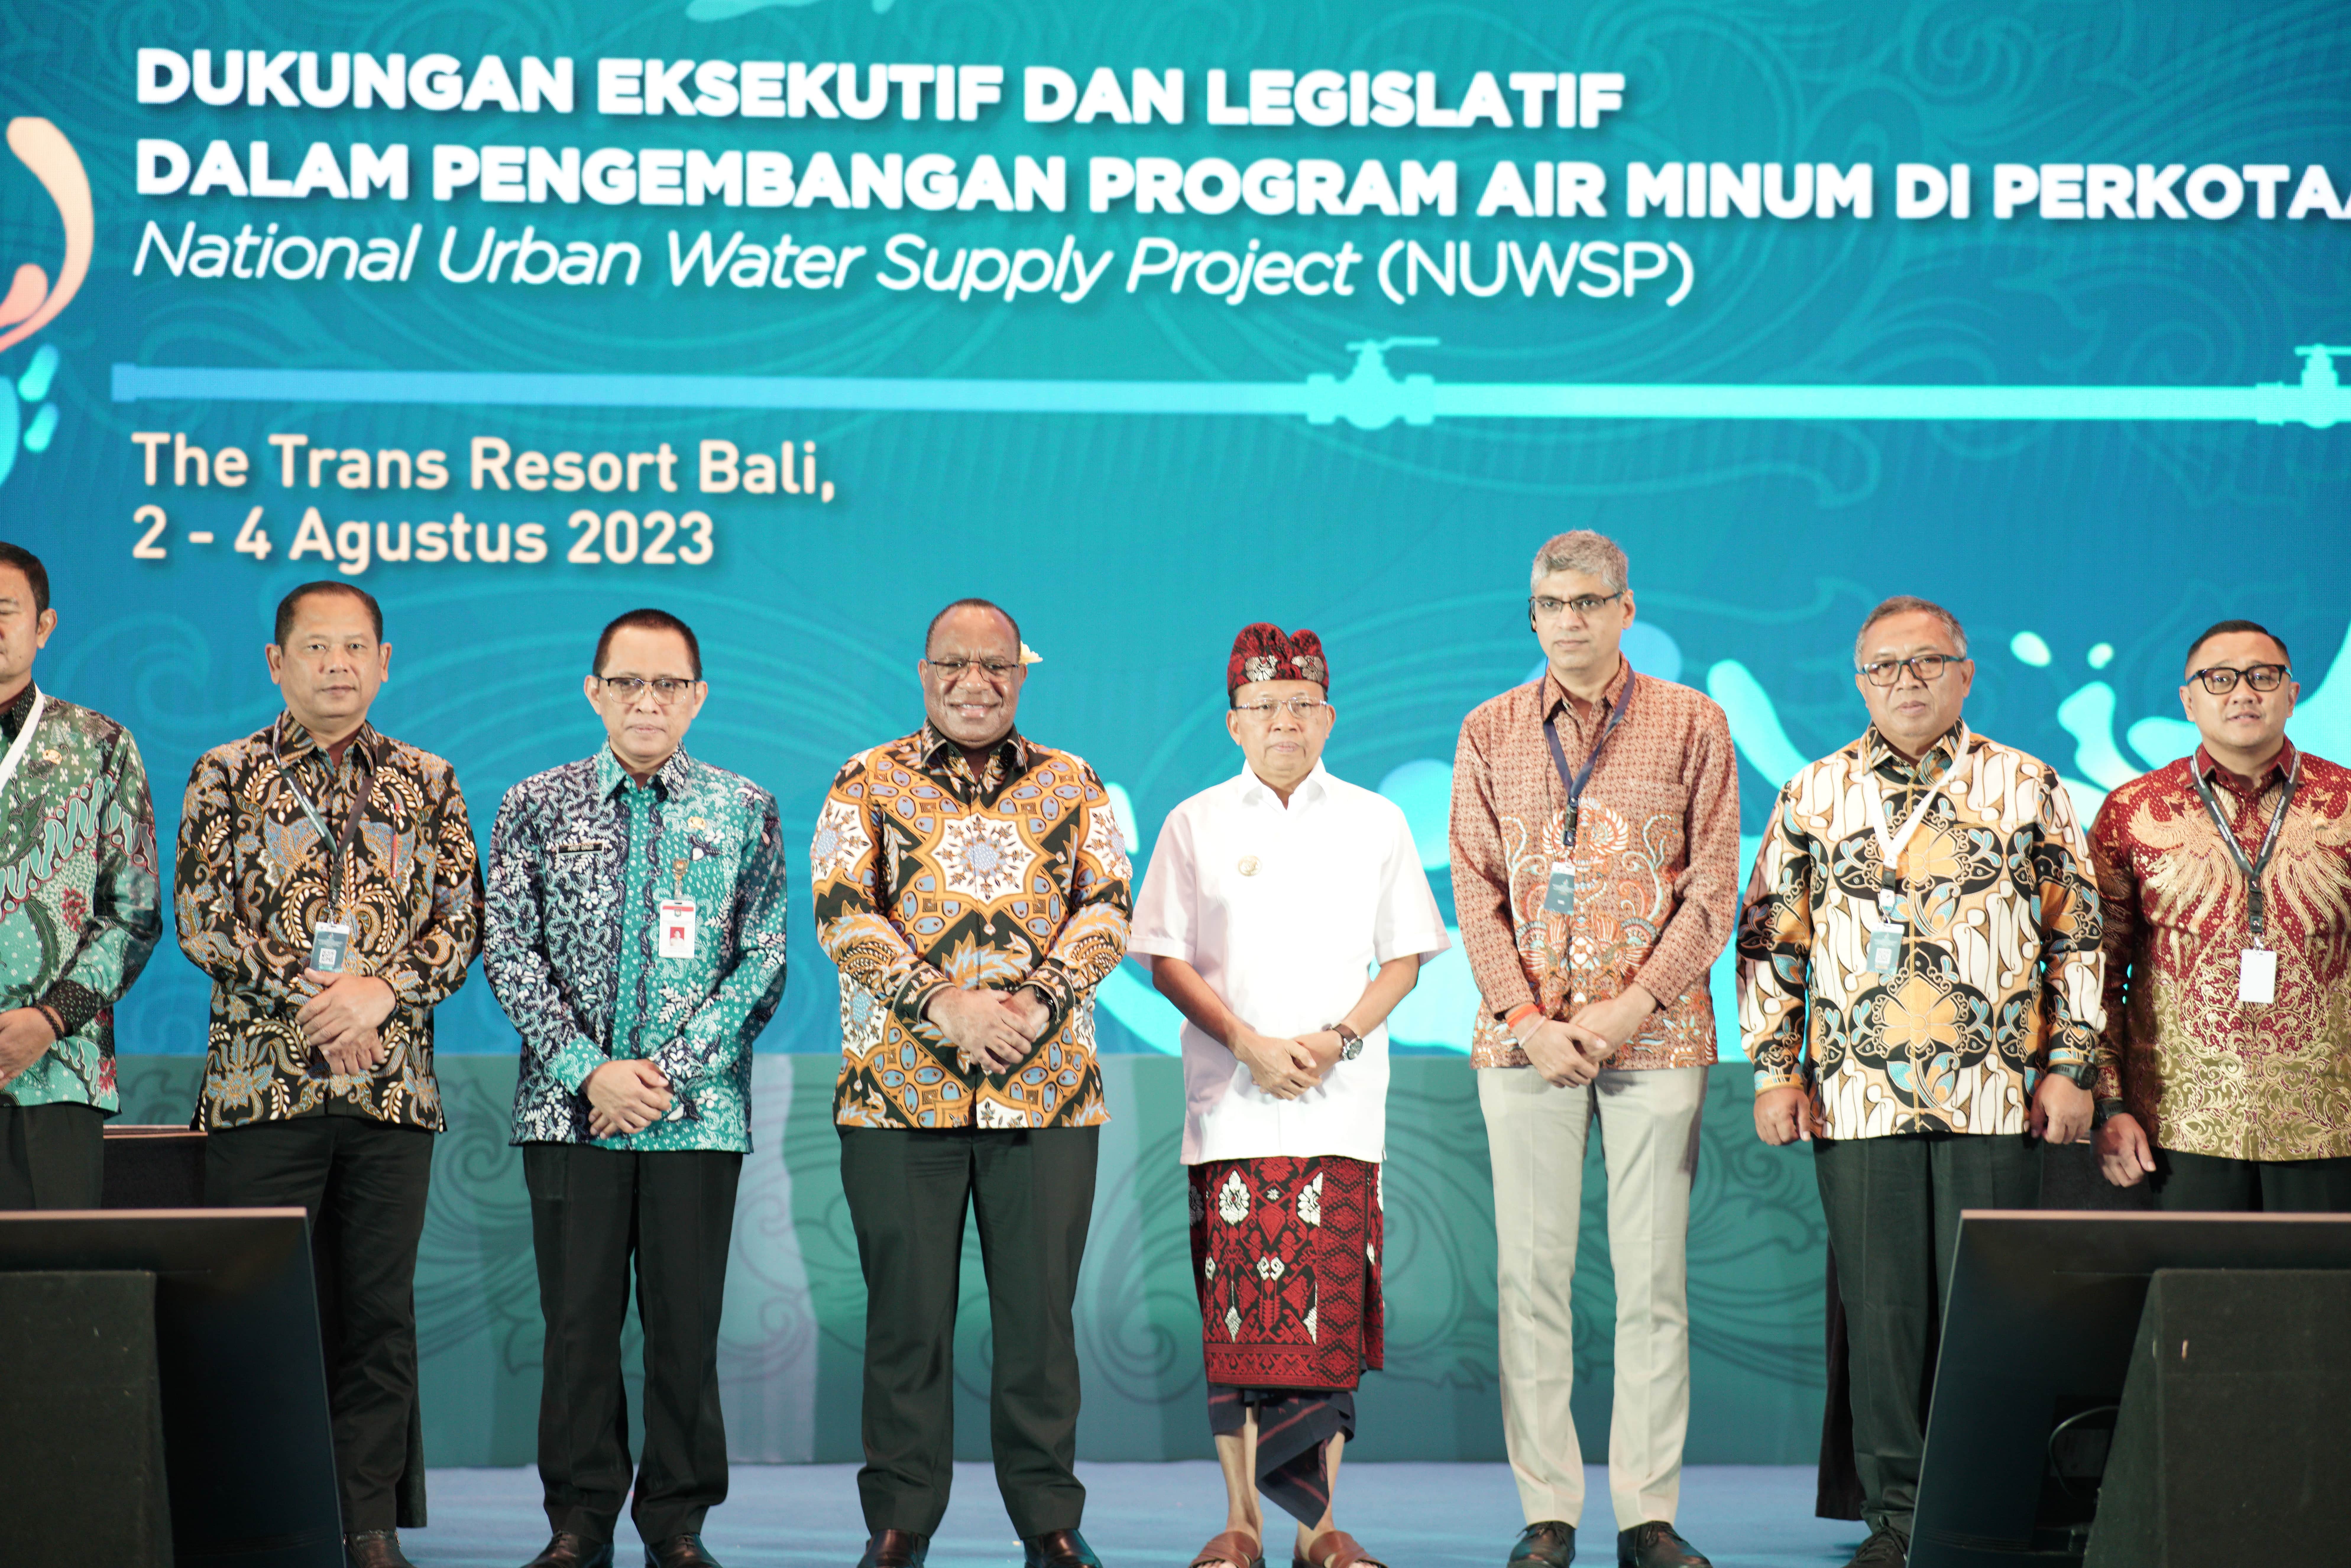 Workshop Dukungan Eksekutif dan Legislatif dalam Pengembangan Program Air Minum di Perkotaan dalam Kerangka National Urban Water Suppy Project (NUWSP)